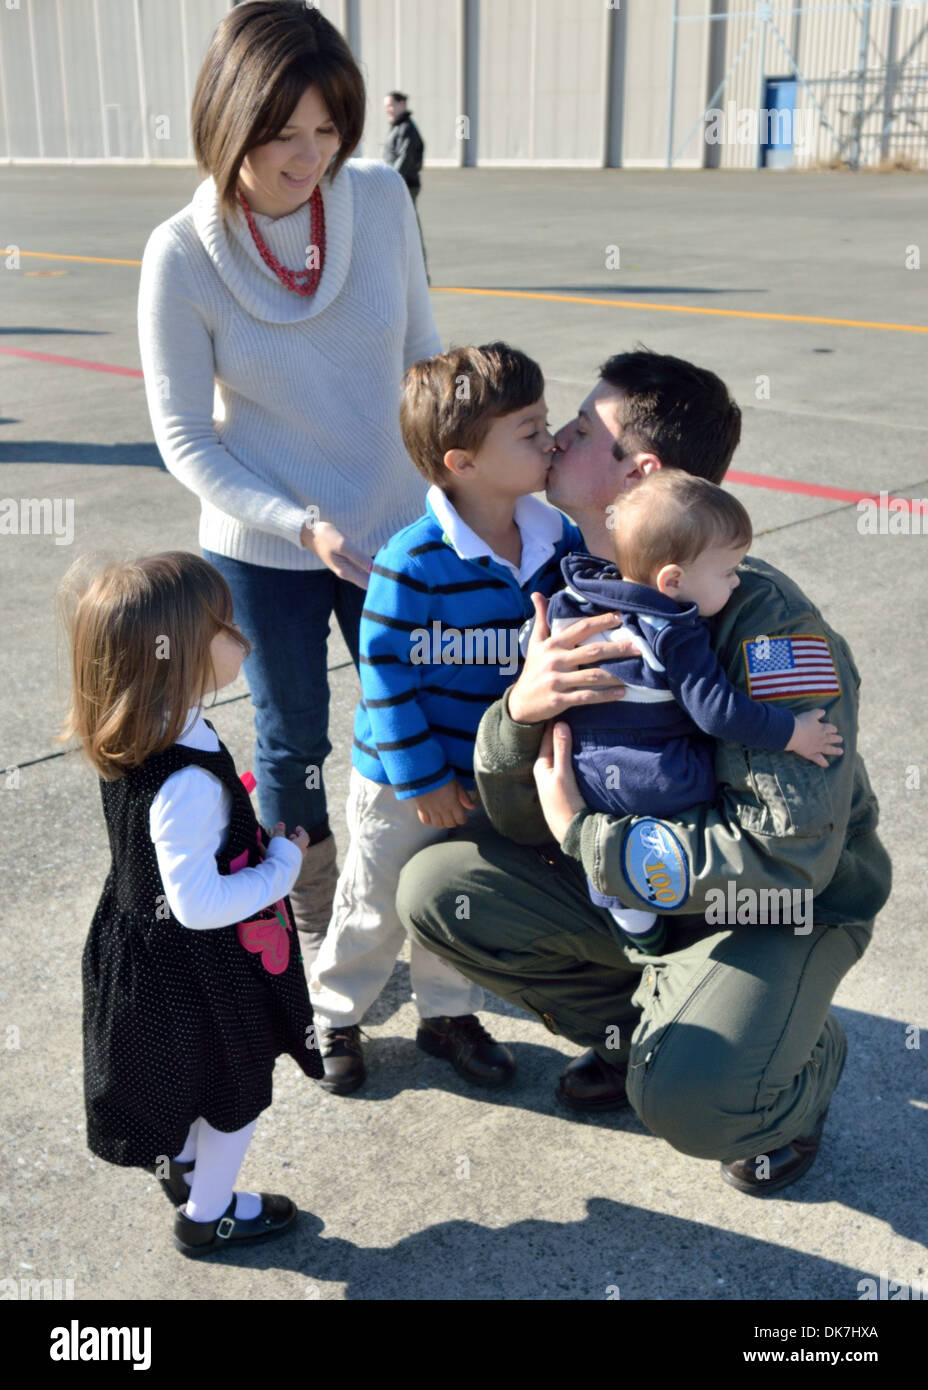 Airborne Early Warning Squadron (VAW) 115 Pilot Lt. CMdR Stephen Yenias, küsst seinen Sohn während einer Heimkehr-Feier am Naval Air Facility Atsugi Flightline. VAW-115 kehrte vor kurzem von einer Einrichtung an Bord der Flugzeugträger der Nimitz-Klasse USS G Stockfoto